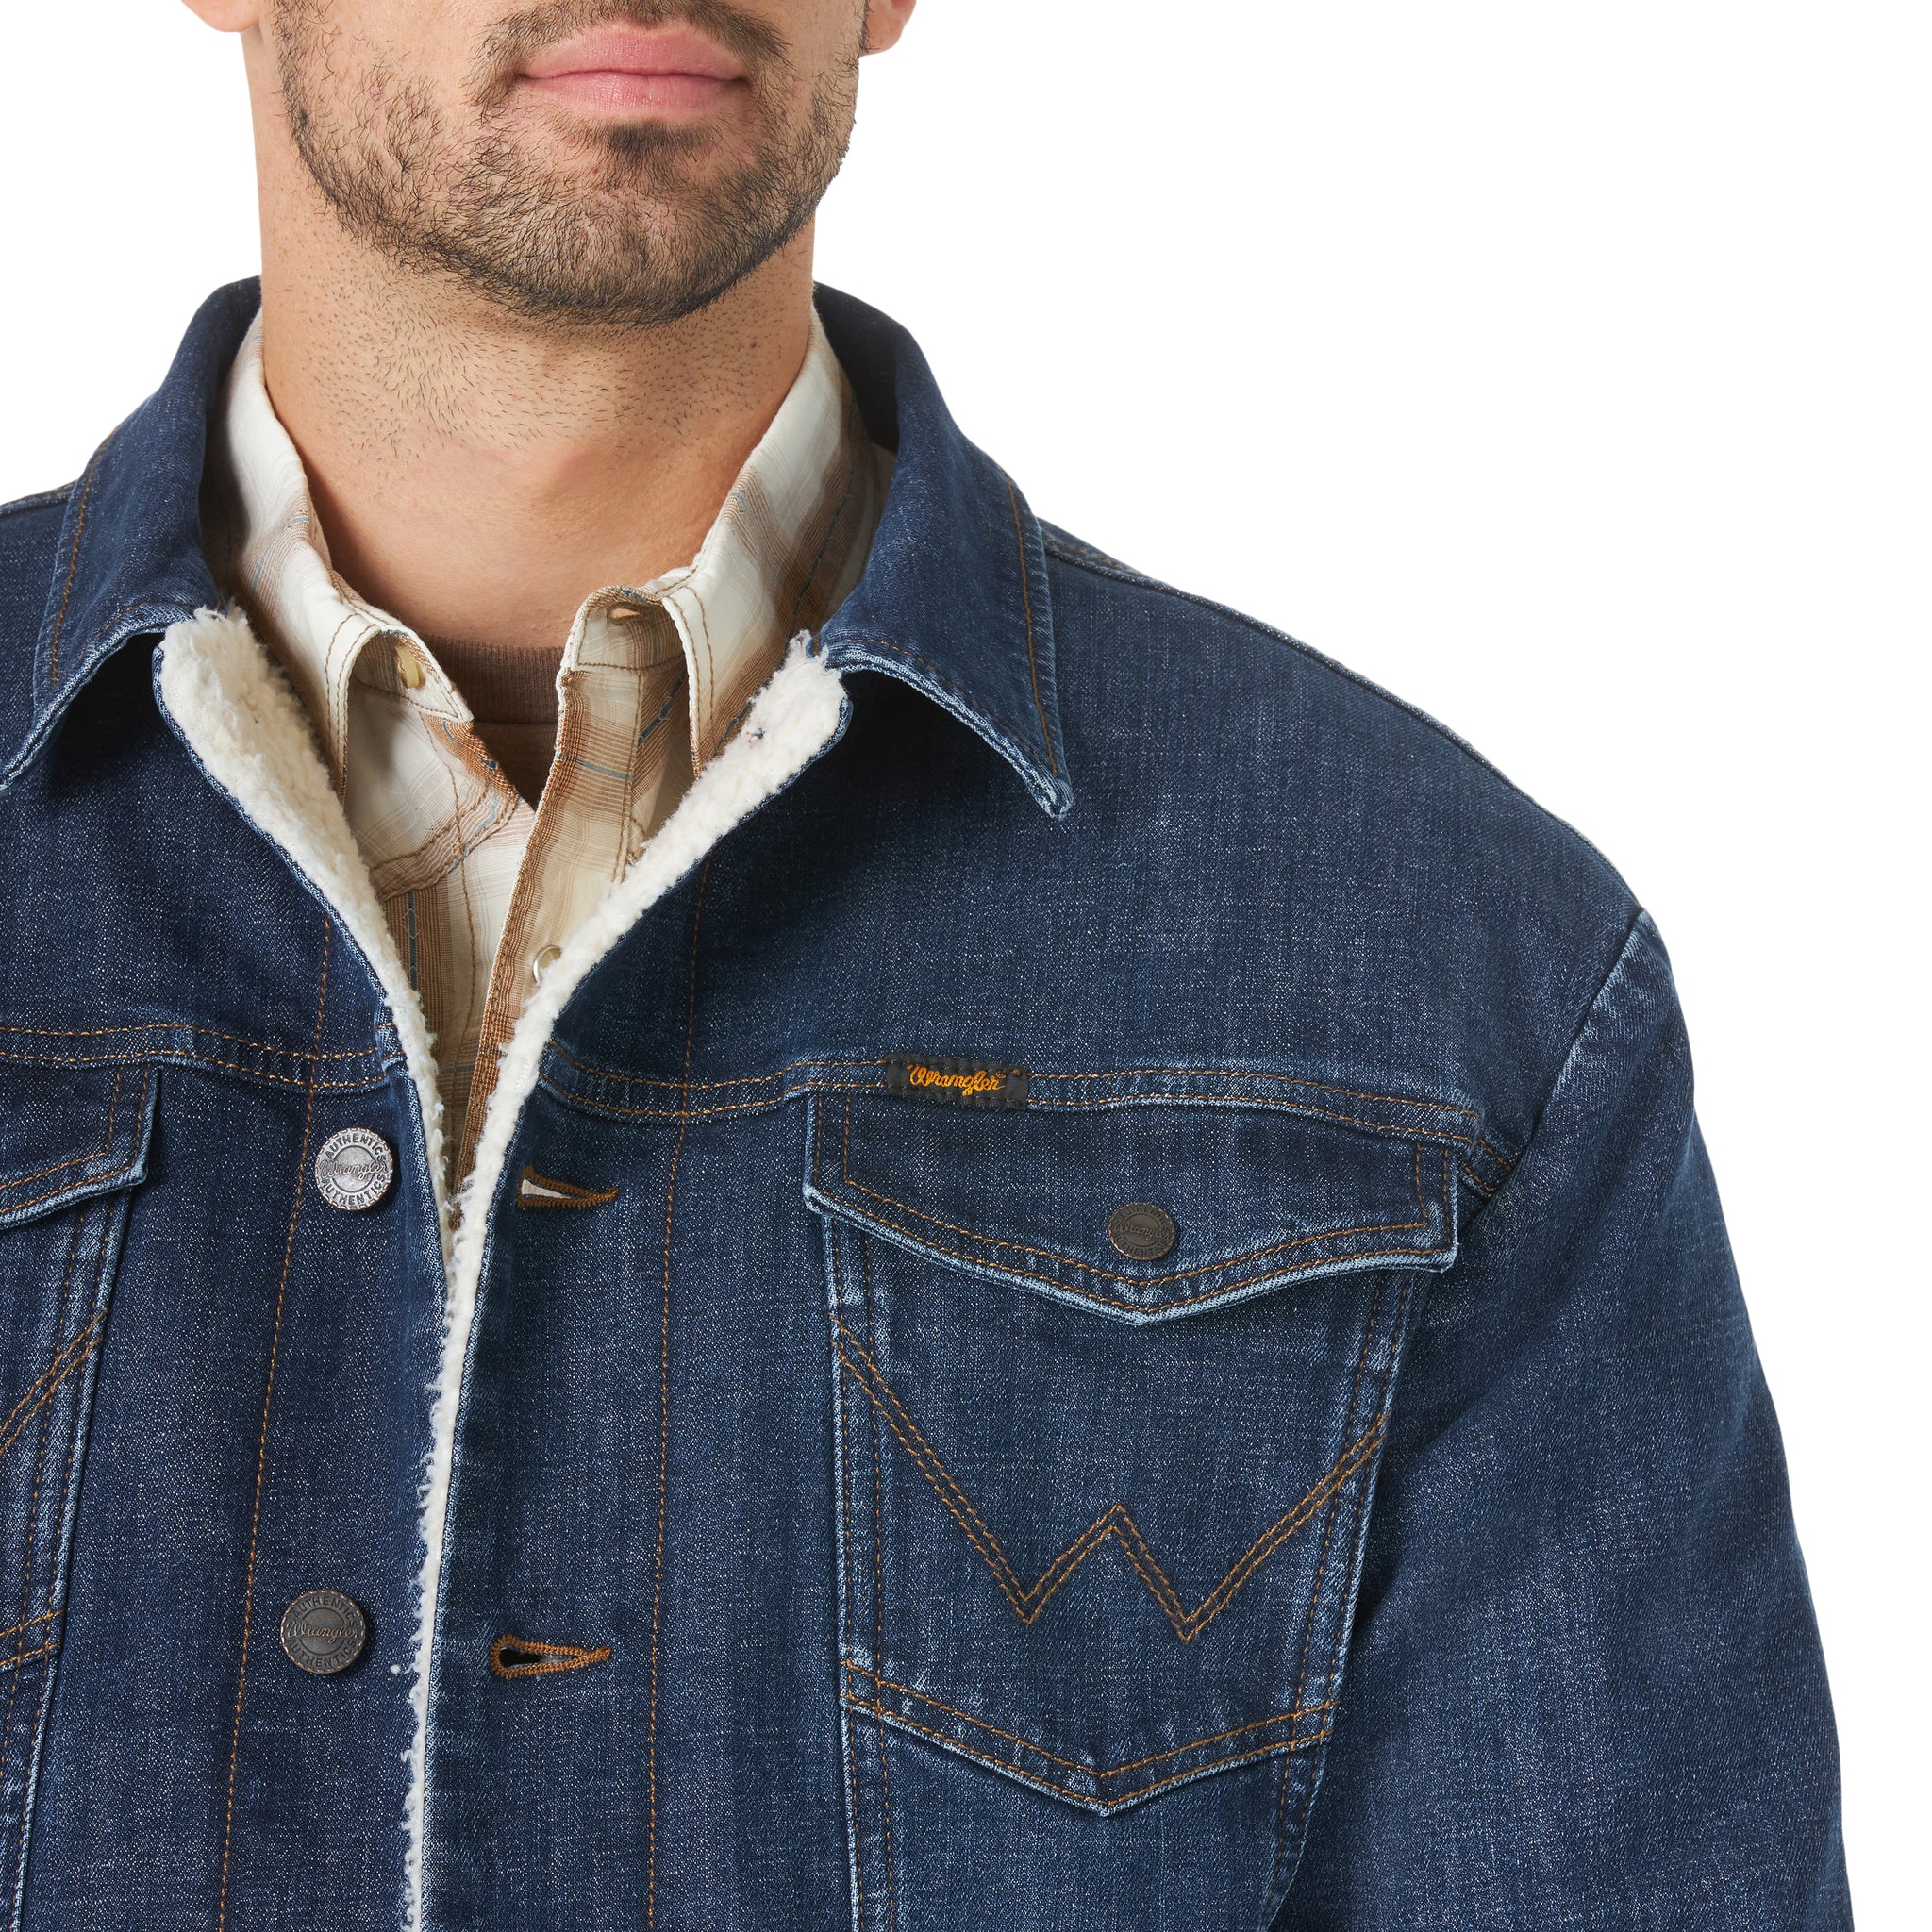 Wrangler Men's Lined Denim Jacket – Branded Dusty Lane